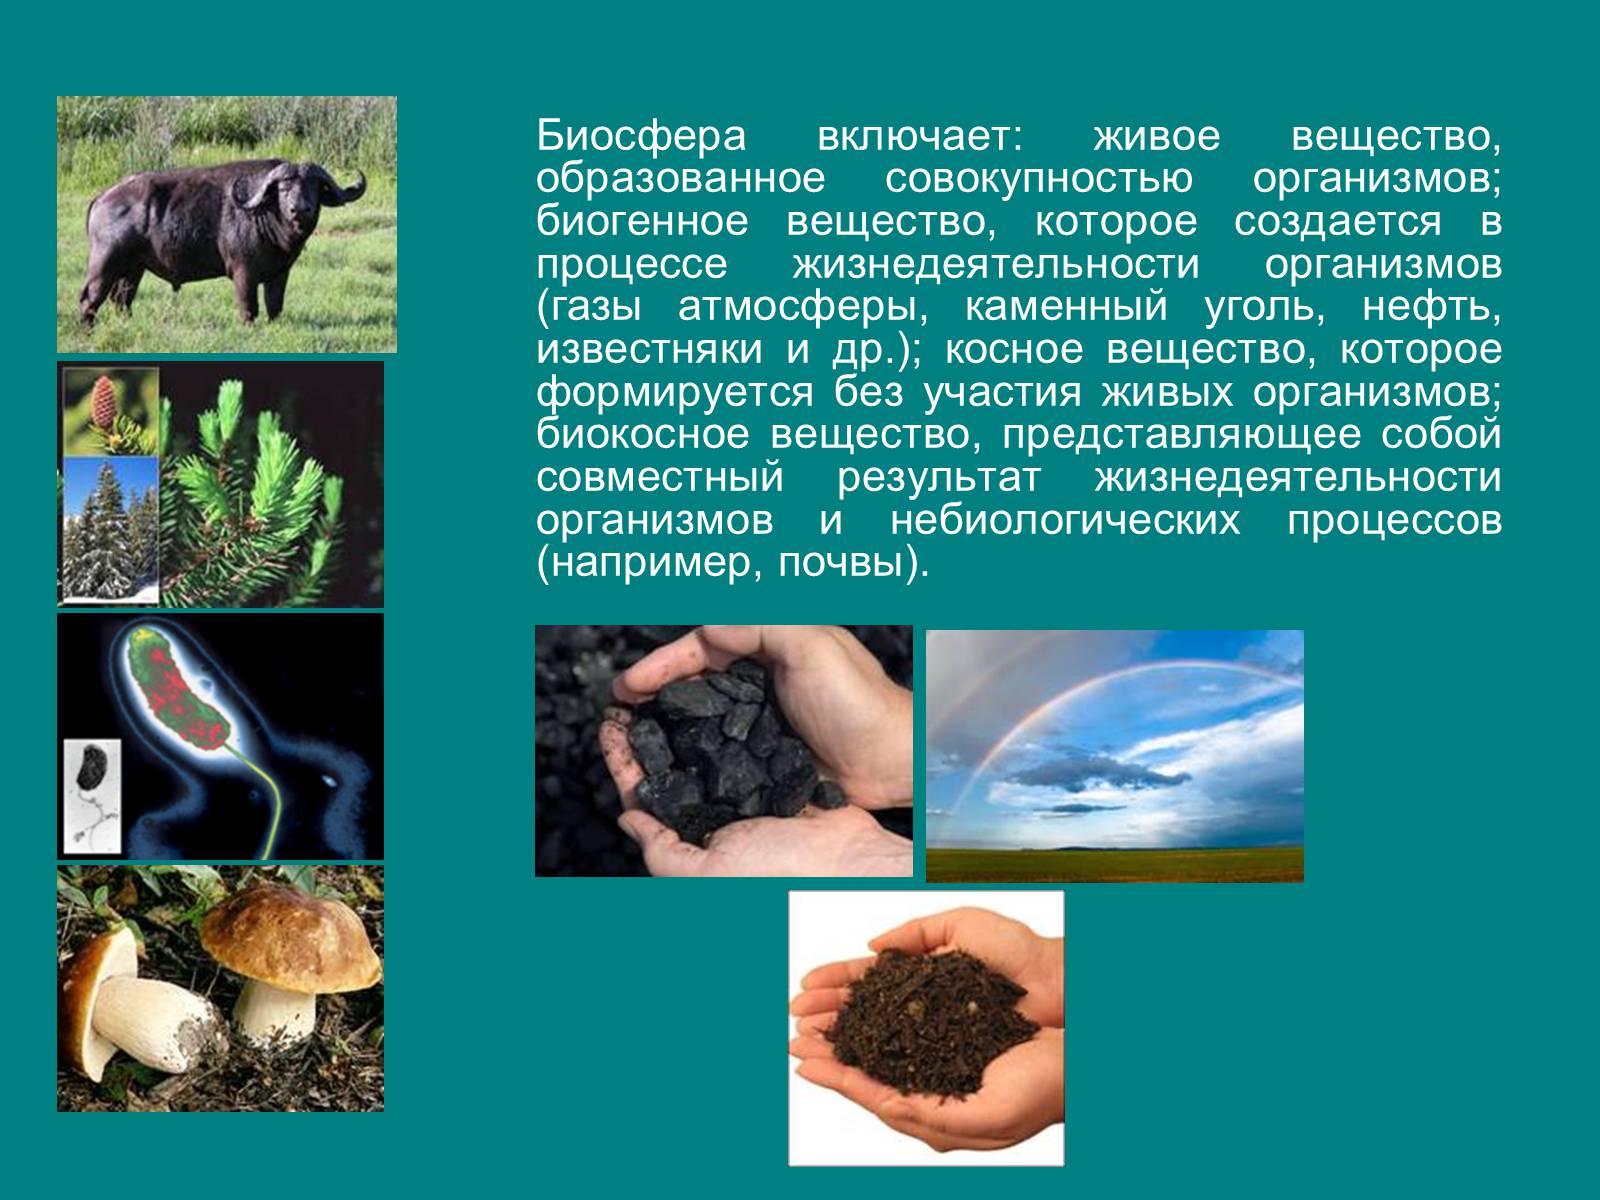 Распространение живых организмов в биосфере. Вещества биосферы. Биогенное вещество биосферы. Живые организмы (живое вещество).. Живые организмы в биосфере.